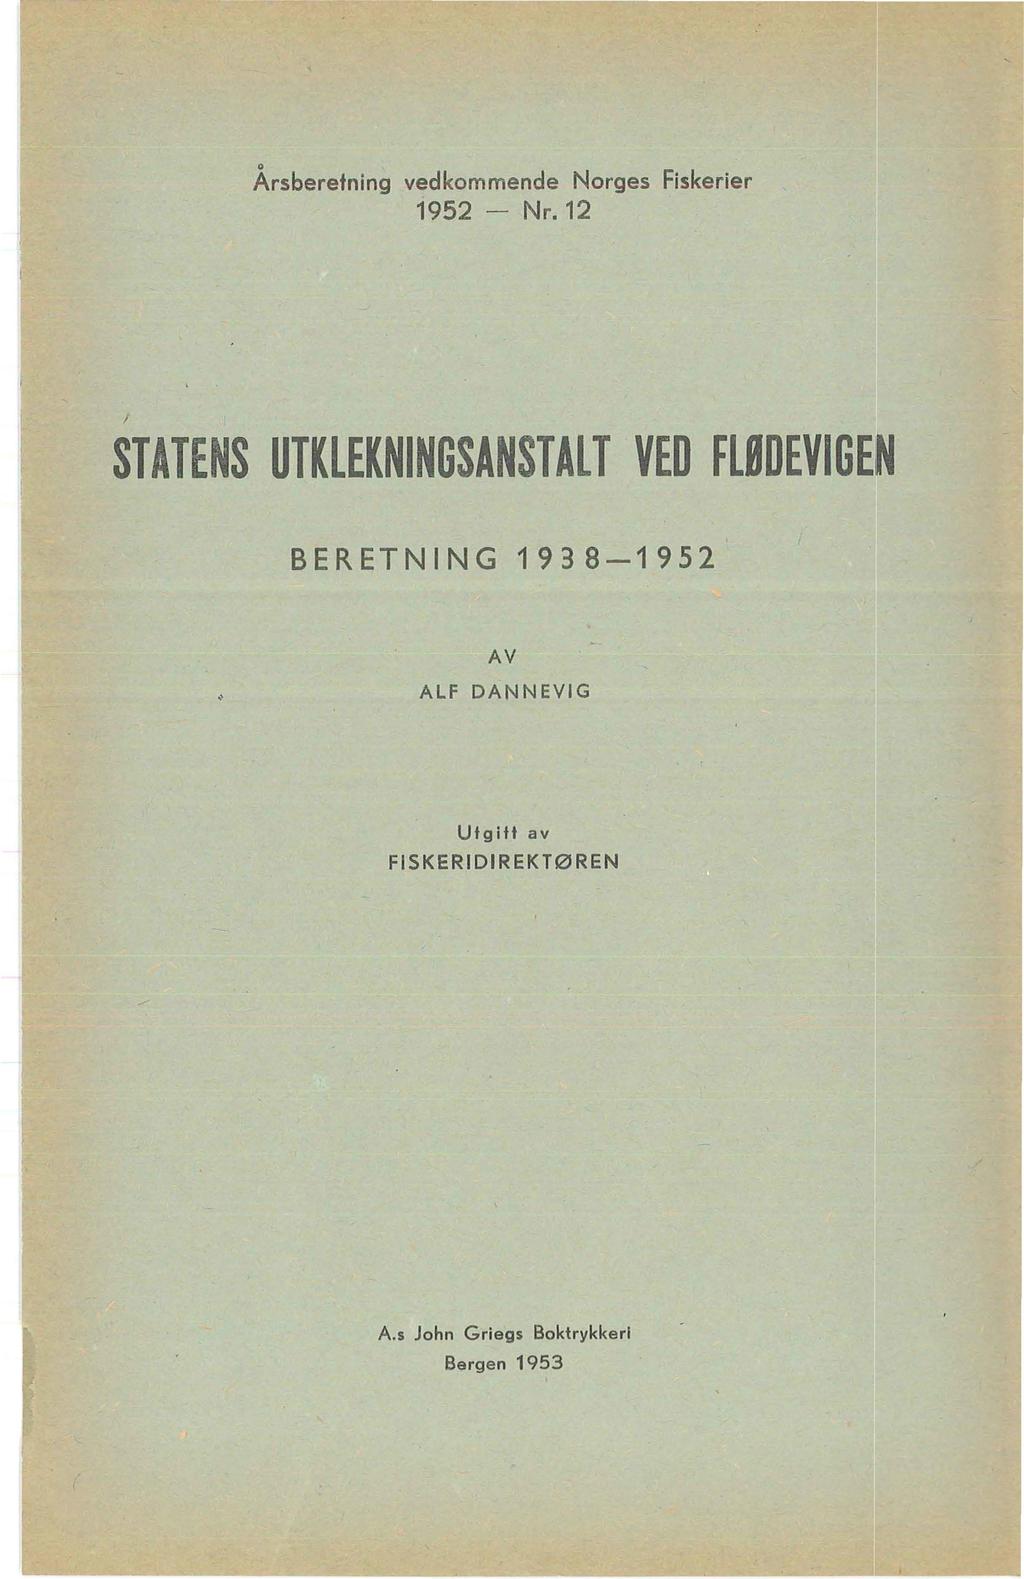 Årsberetning vedkommende Norges Fiskerier 1952 - Nr.